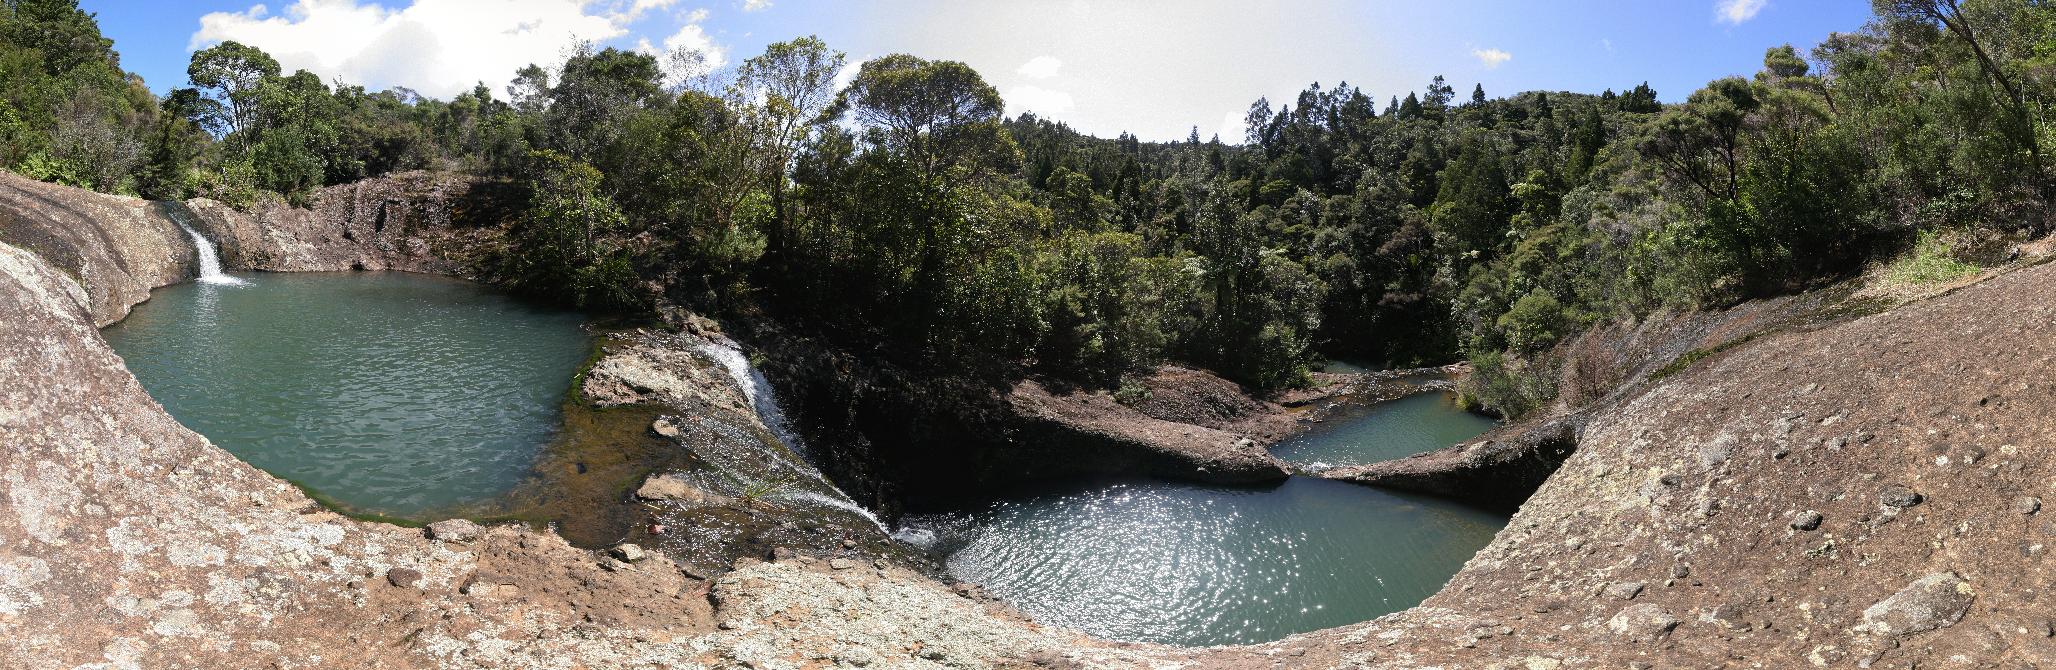 Ein Panorama von drei stufenförmig angeordneten, natürlichen Pools, die ein Bach in eine Felsplatte geschnitten hat